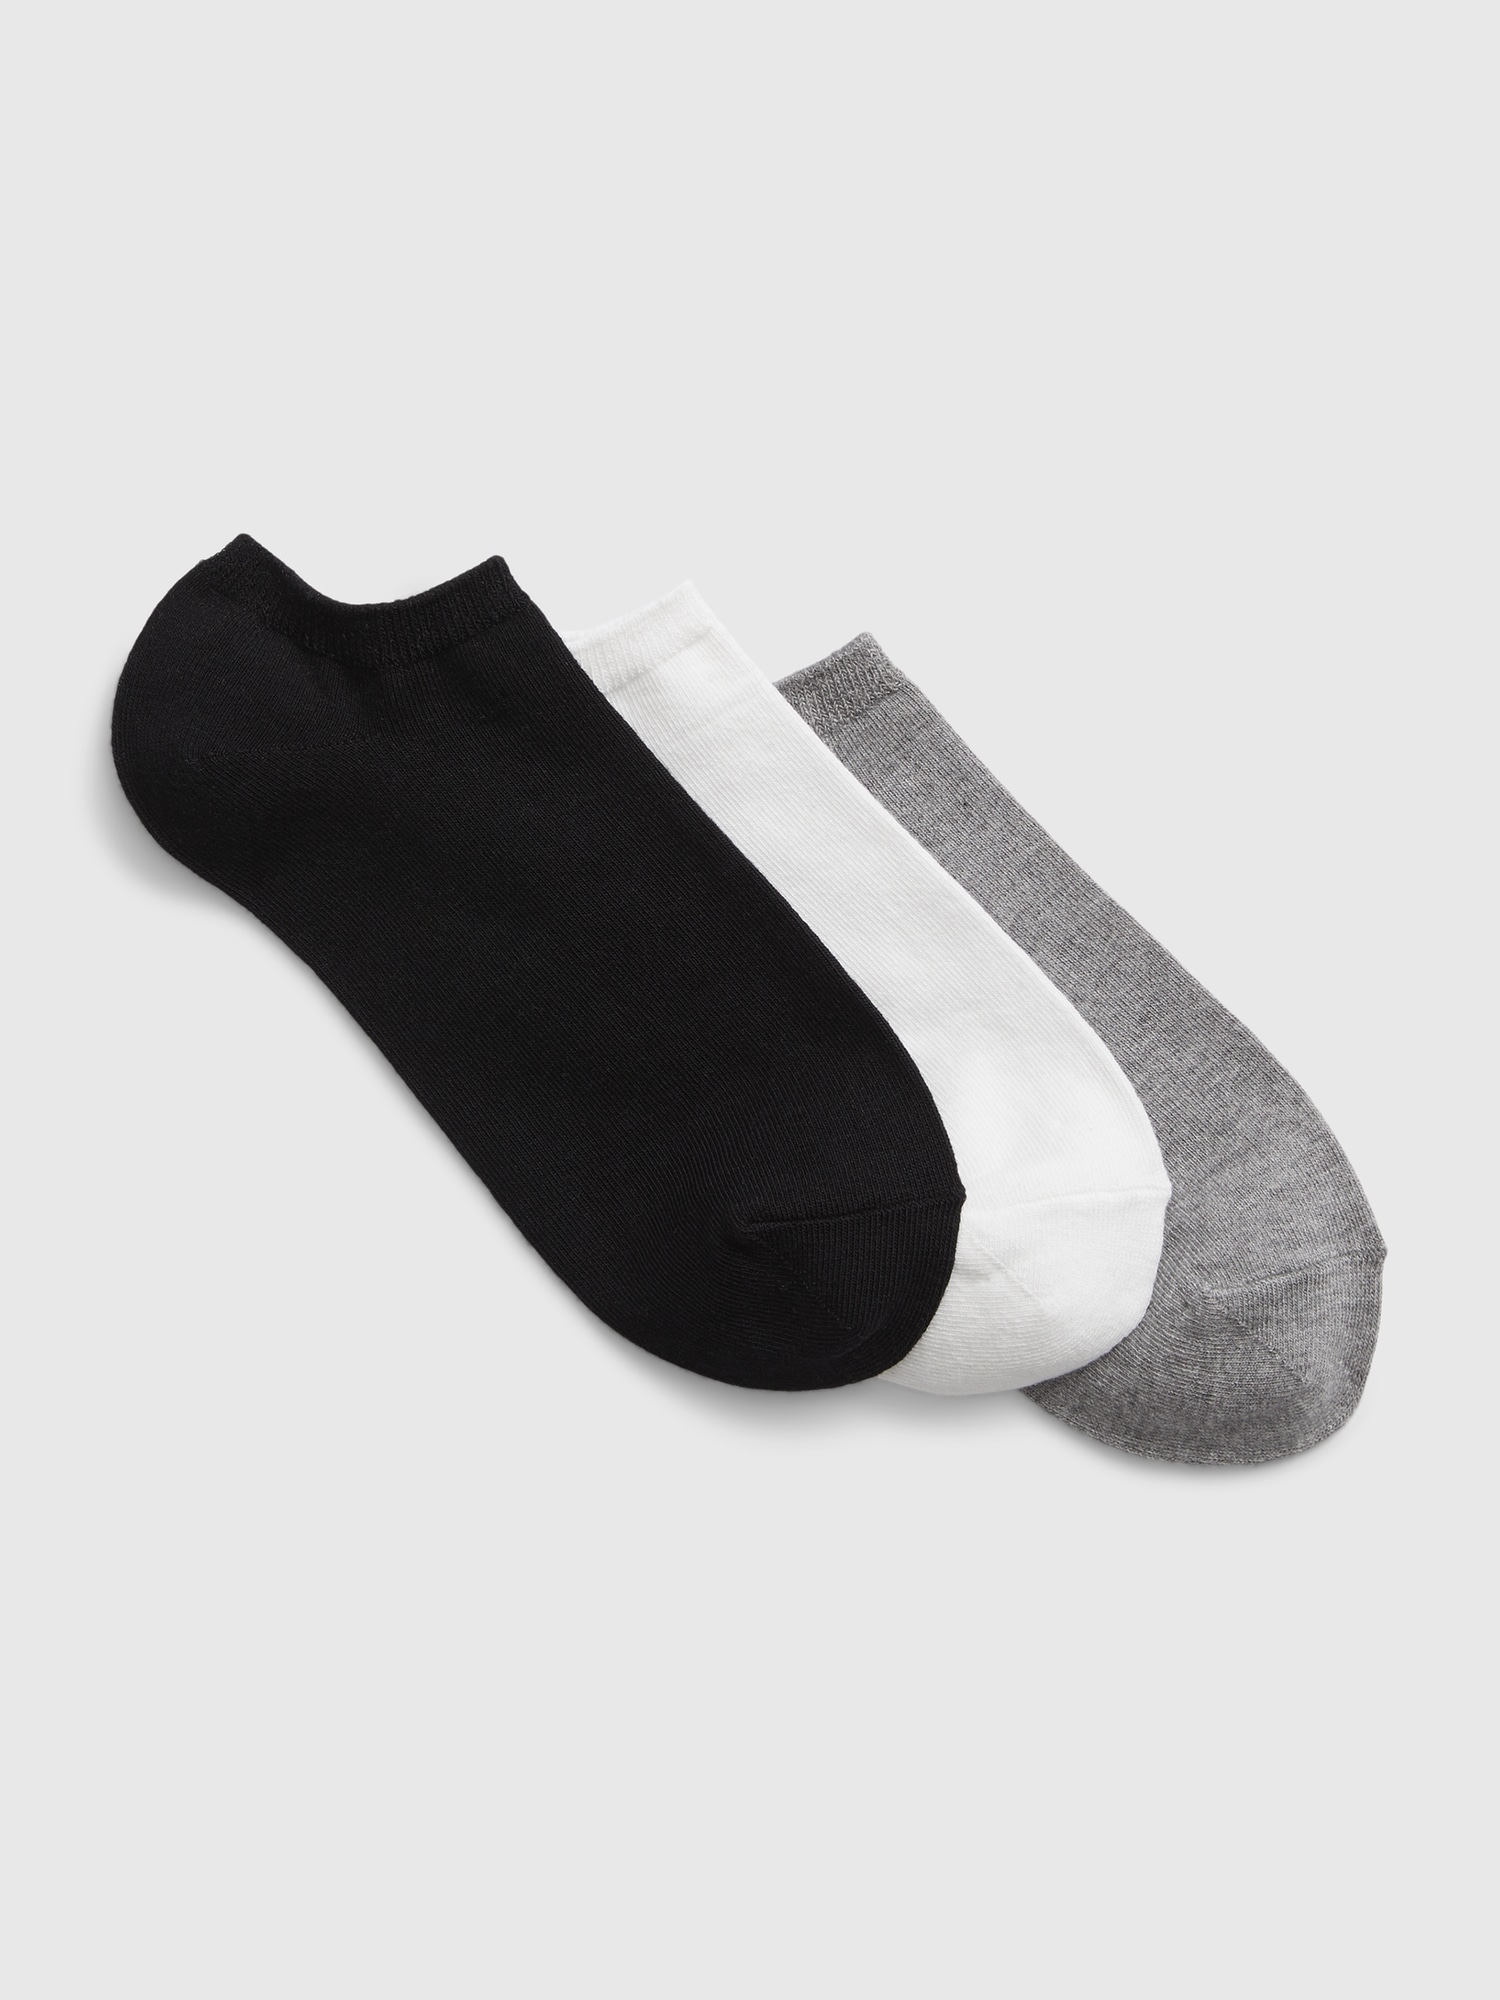 Brilliant Basics Women's Footlet Socks 3 Pack - Black